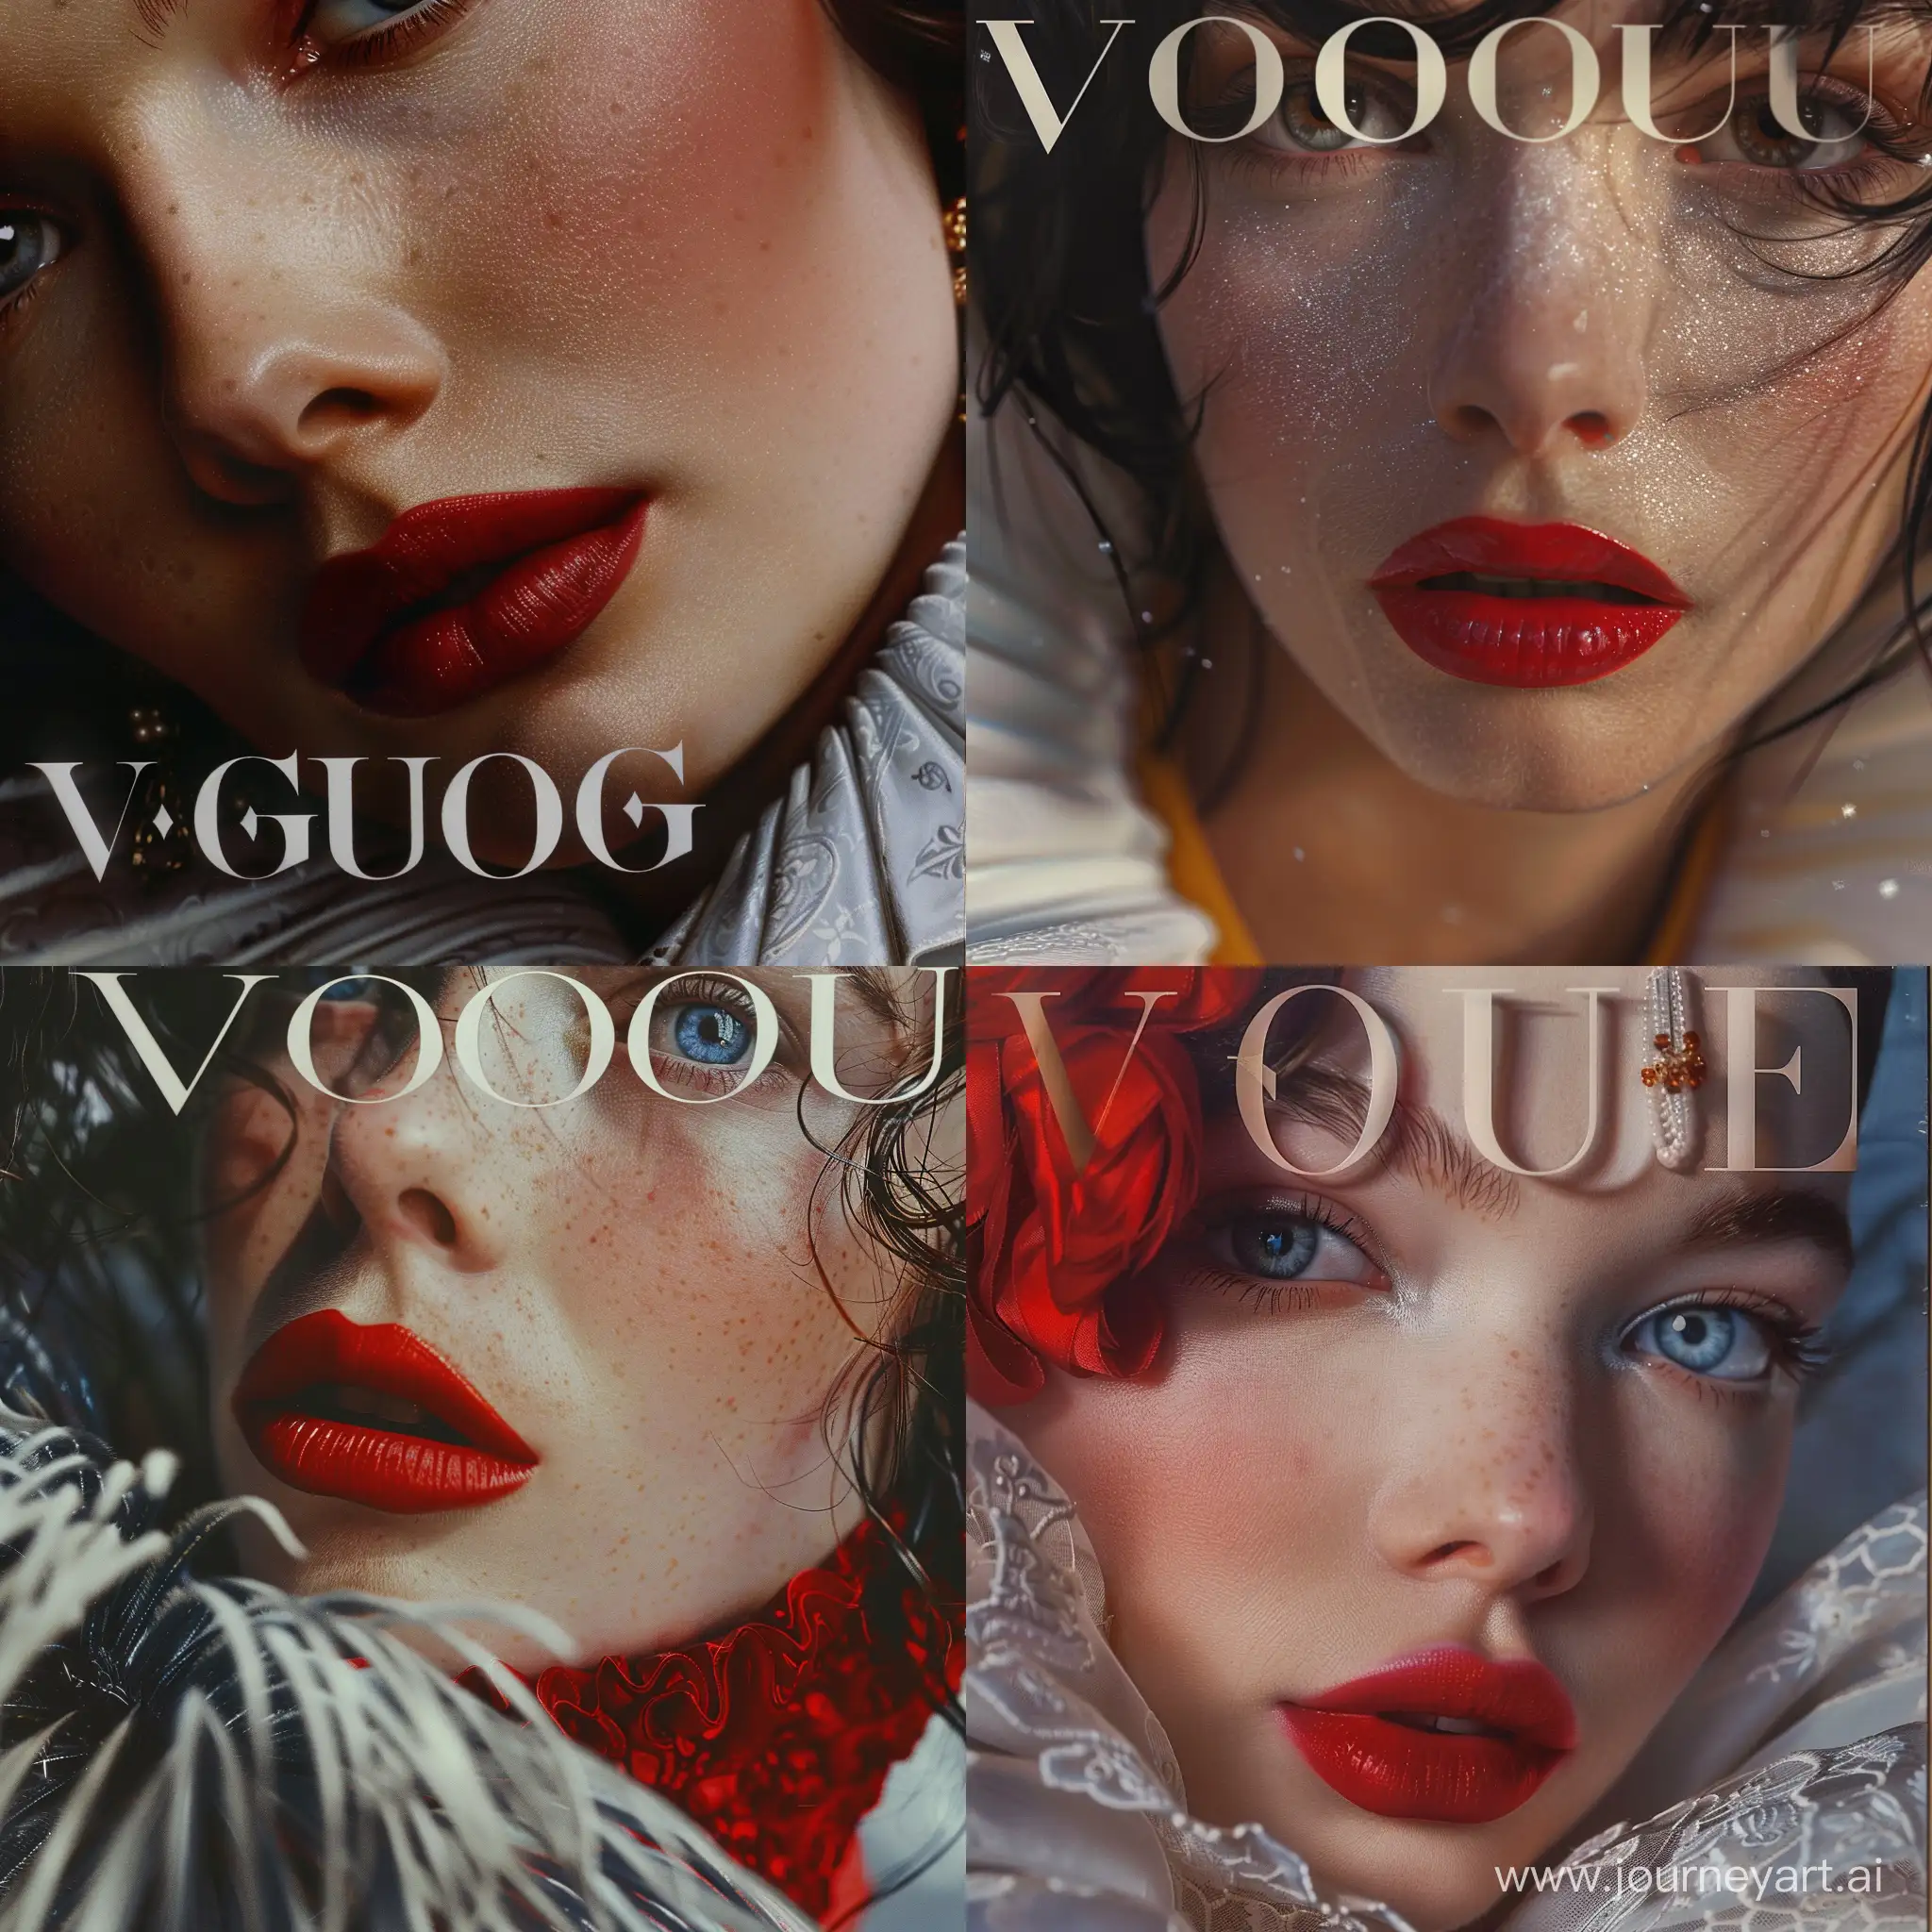 обложка модного журнала vouge 
заголовок 
буквами написано vogue. надпись 


Белоснежка,в стиле работ фотографа Тима Уолкера

крупный план. фотореализм